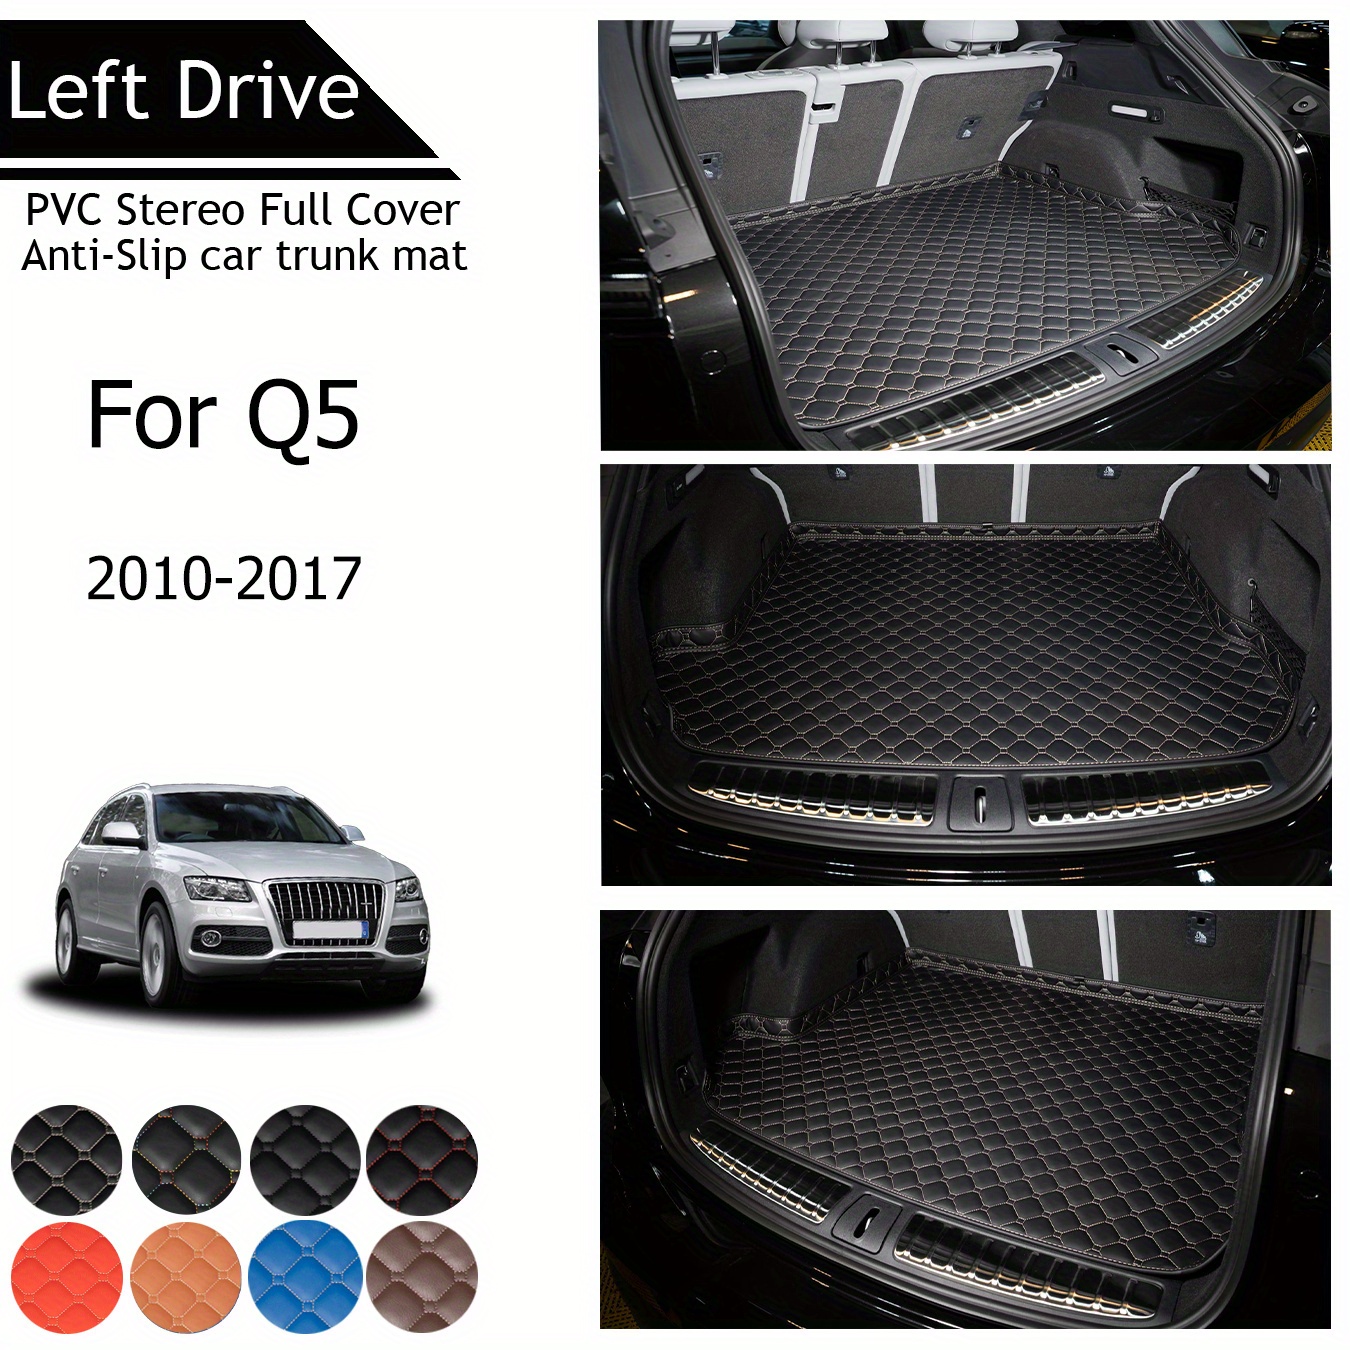 

Tegart [lhd] For Q5 For 2010-2017 3 Layer Pvc Stereo Full Cover Anti-slip Car Trunk Mats